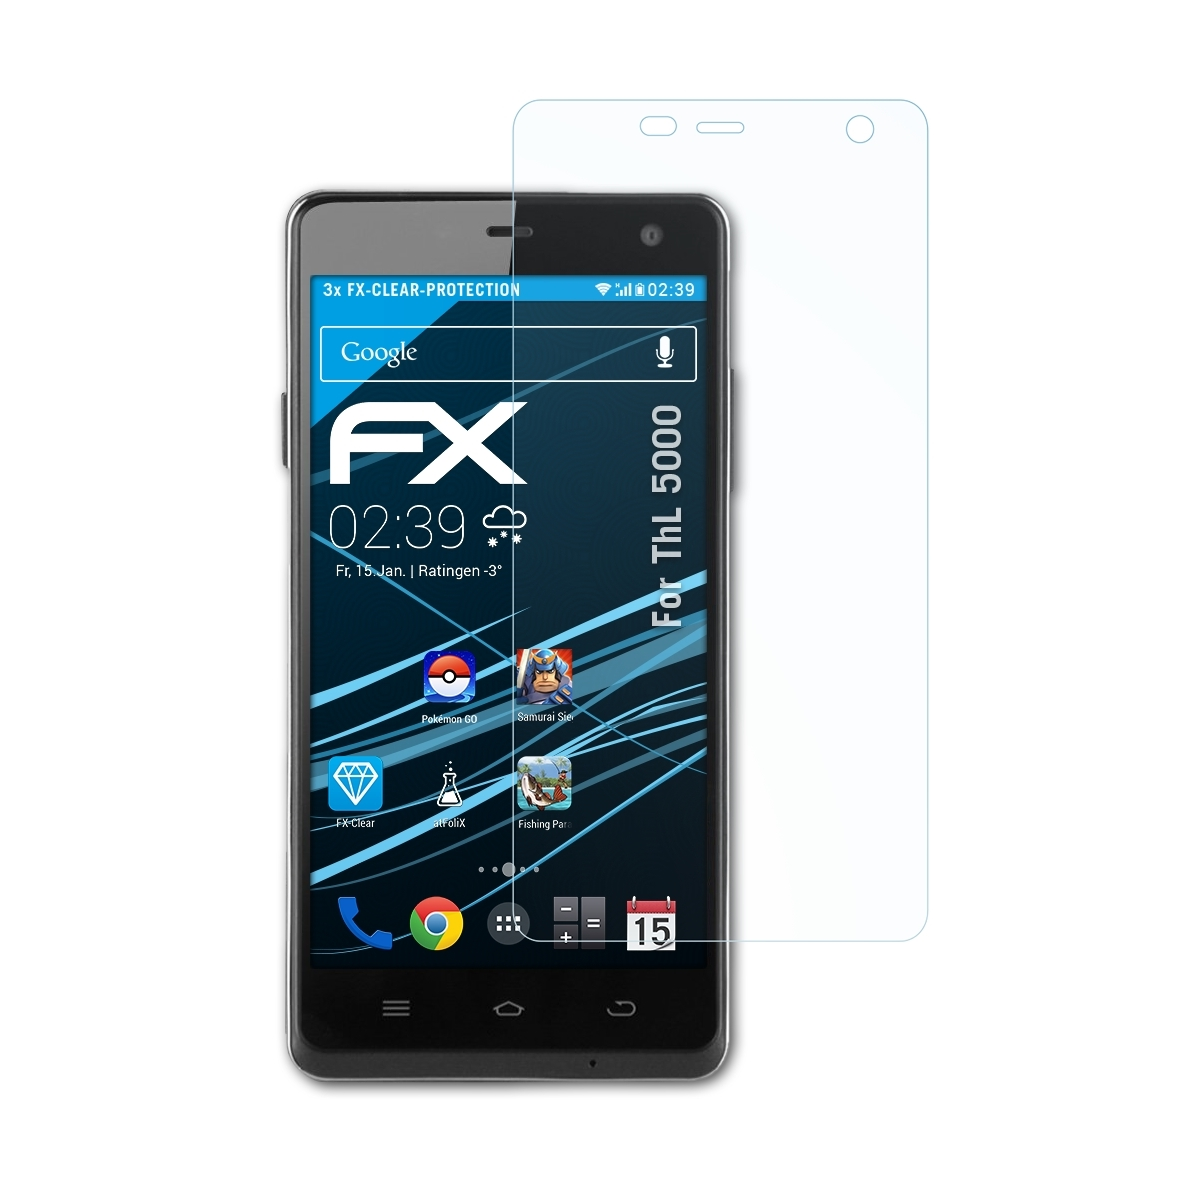 ATFOLIX 3x FX-Clear Displayschutz(für 5000) ThL